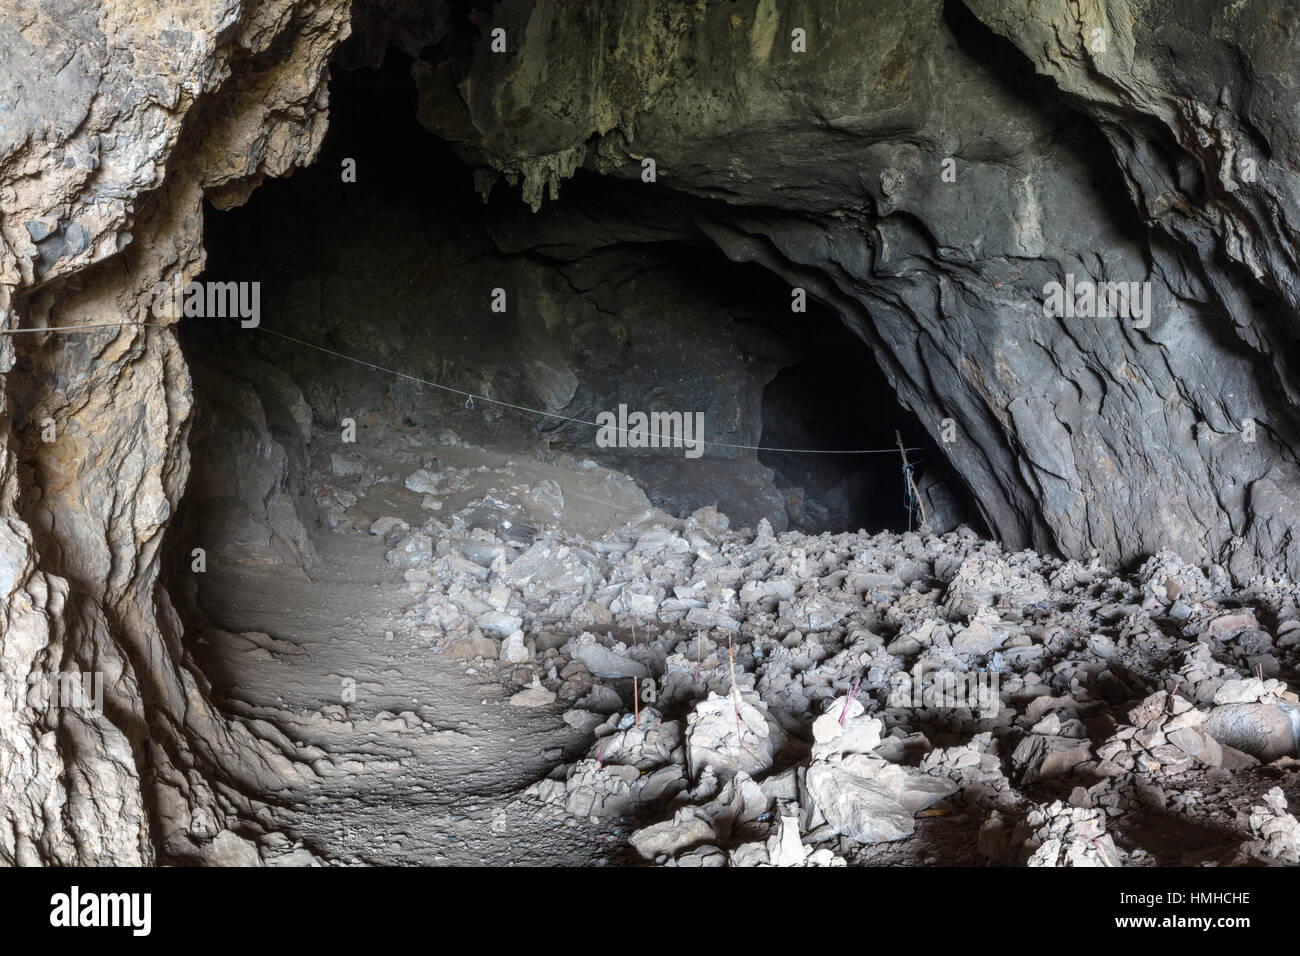 Grotte de Tham Piu Memorial, Xiang Khouang Province, Laos Banque D'Images